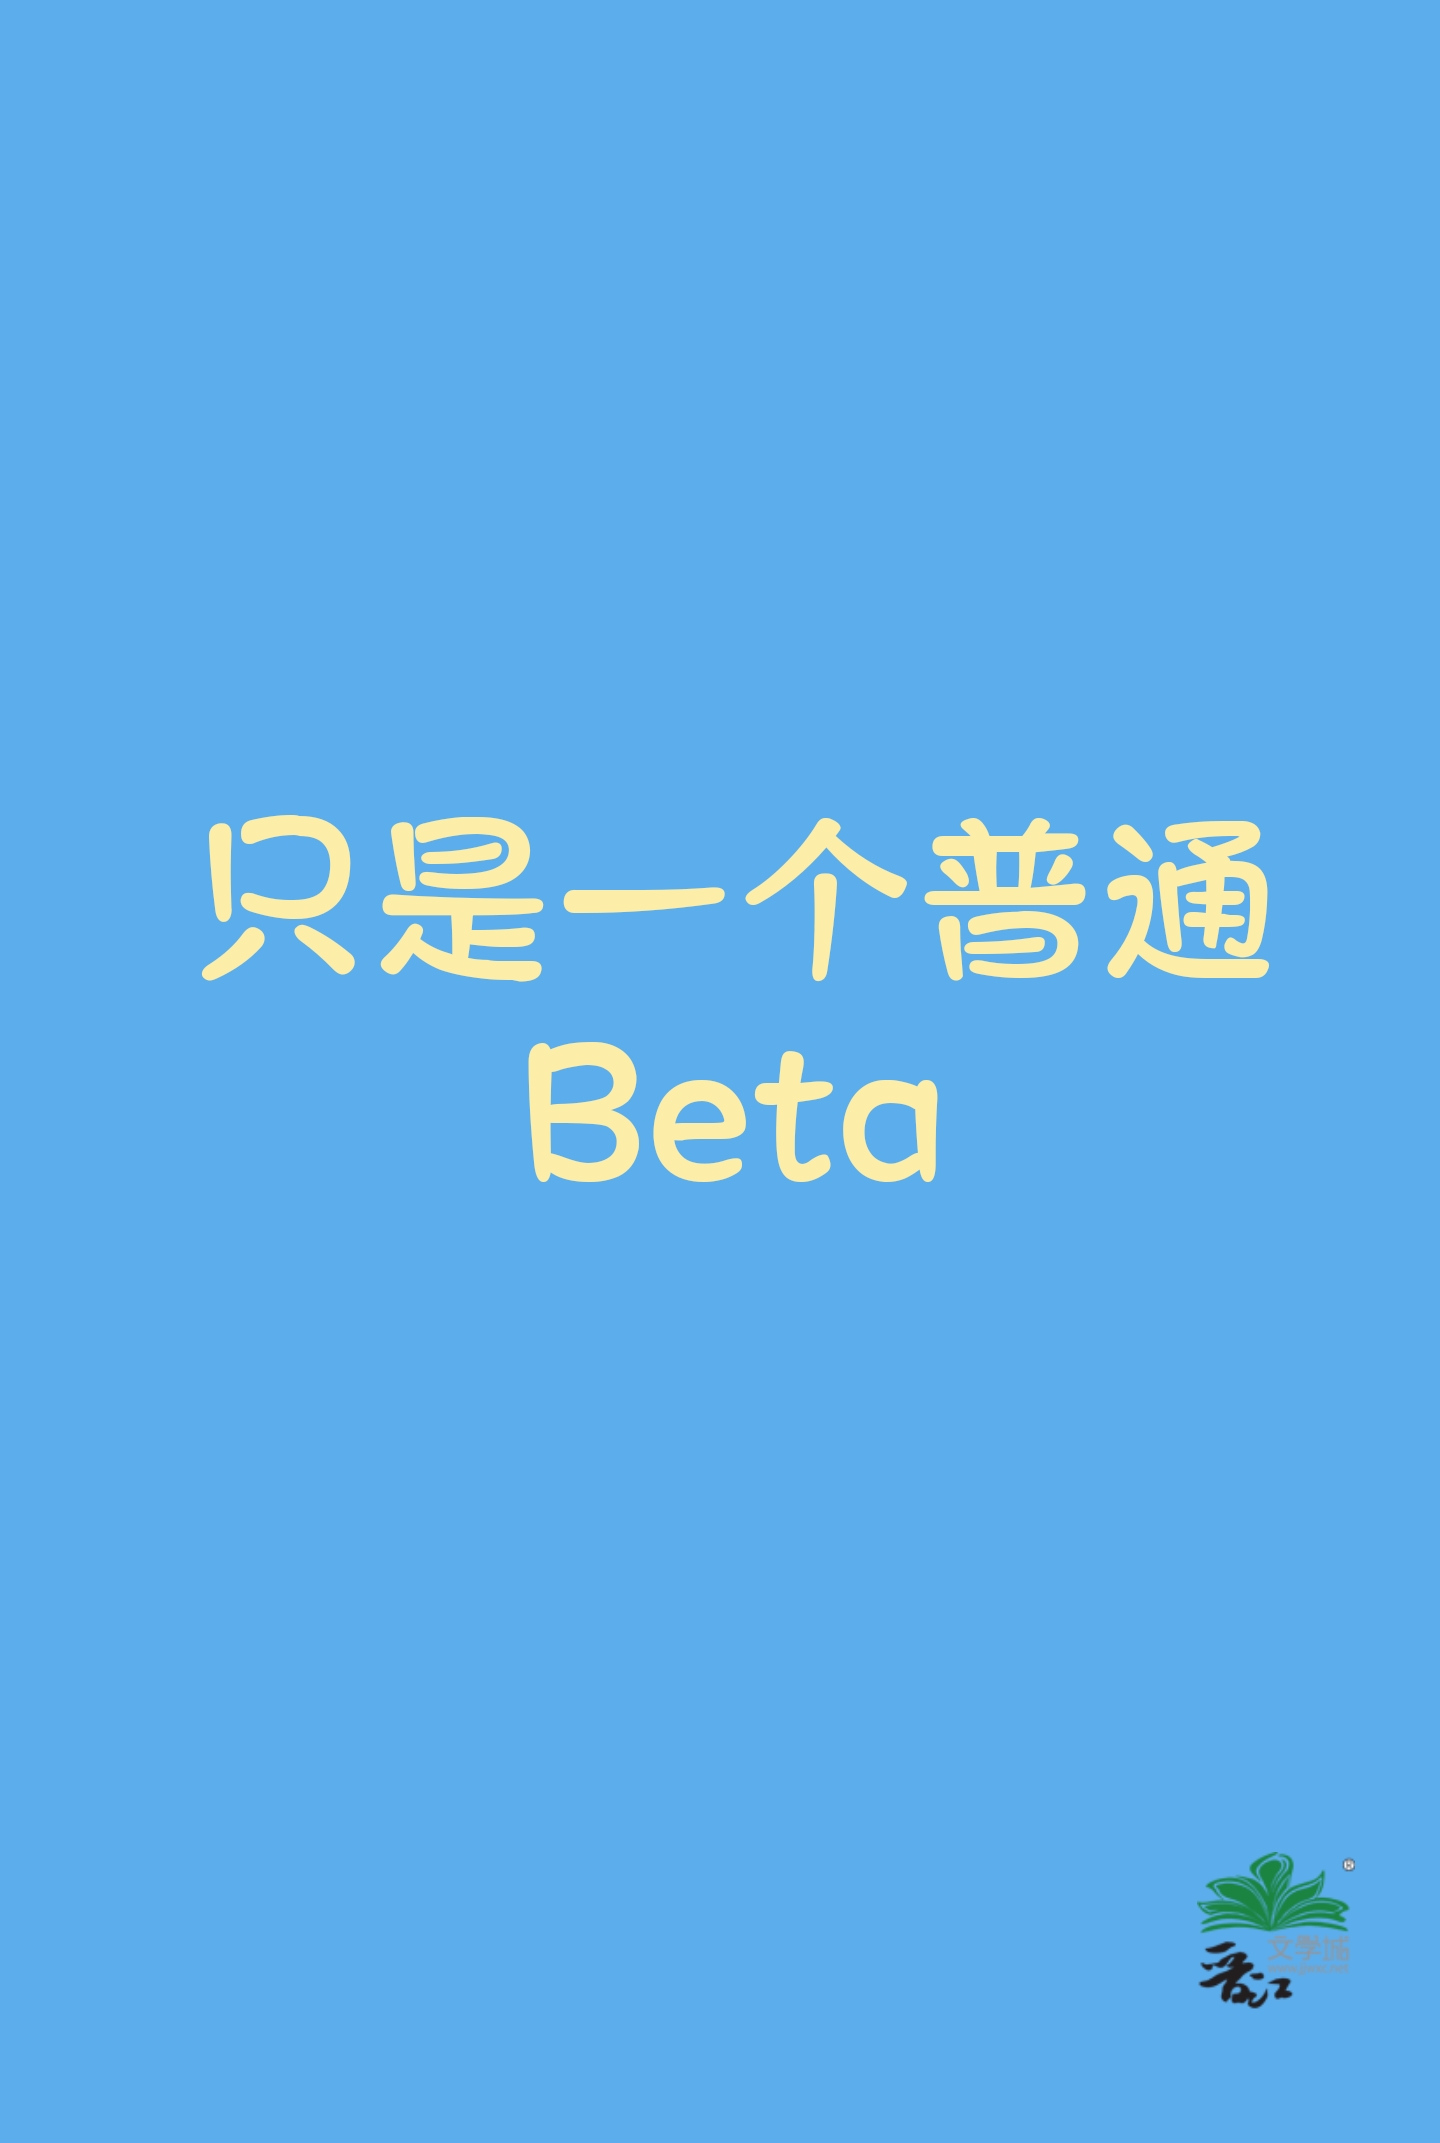 一个beta